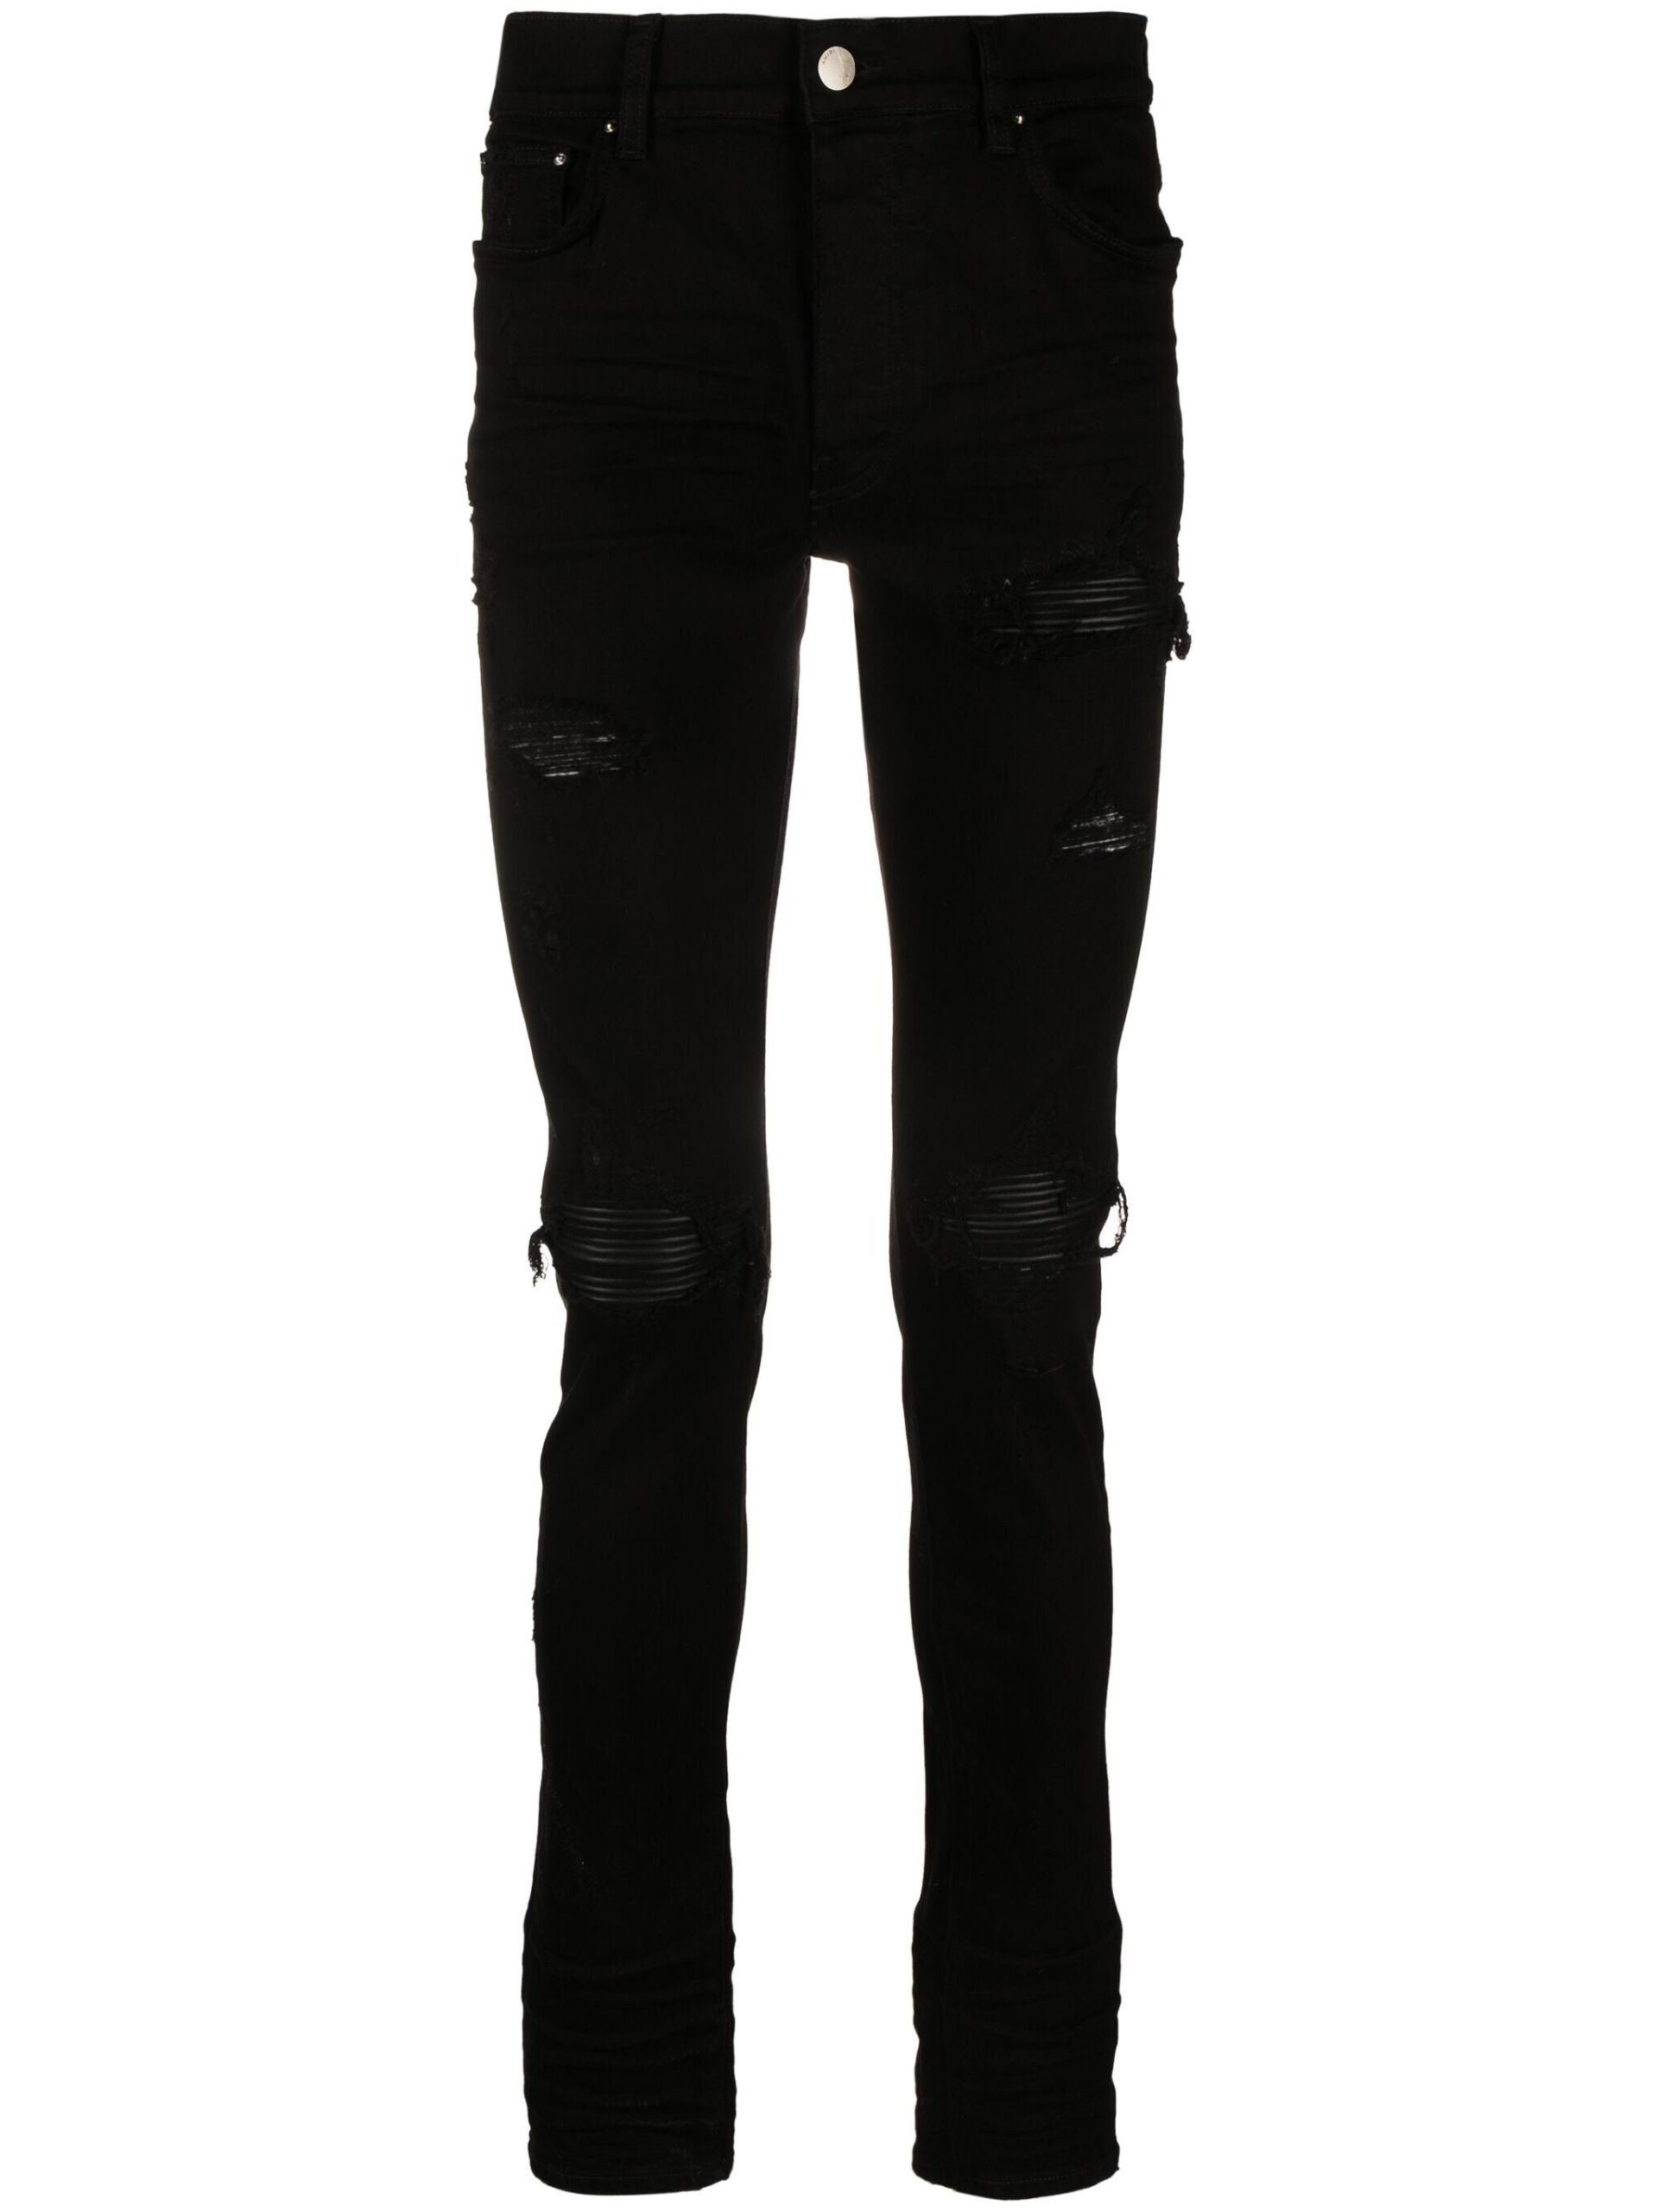 Black Distressed Skinny Cut Jeans - 1